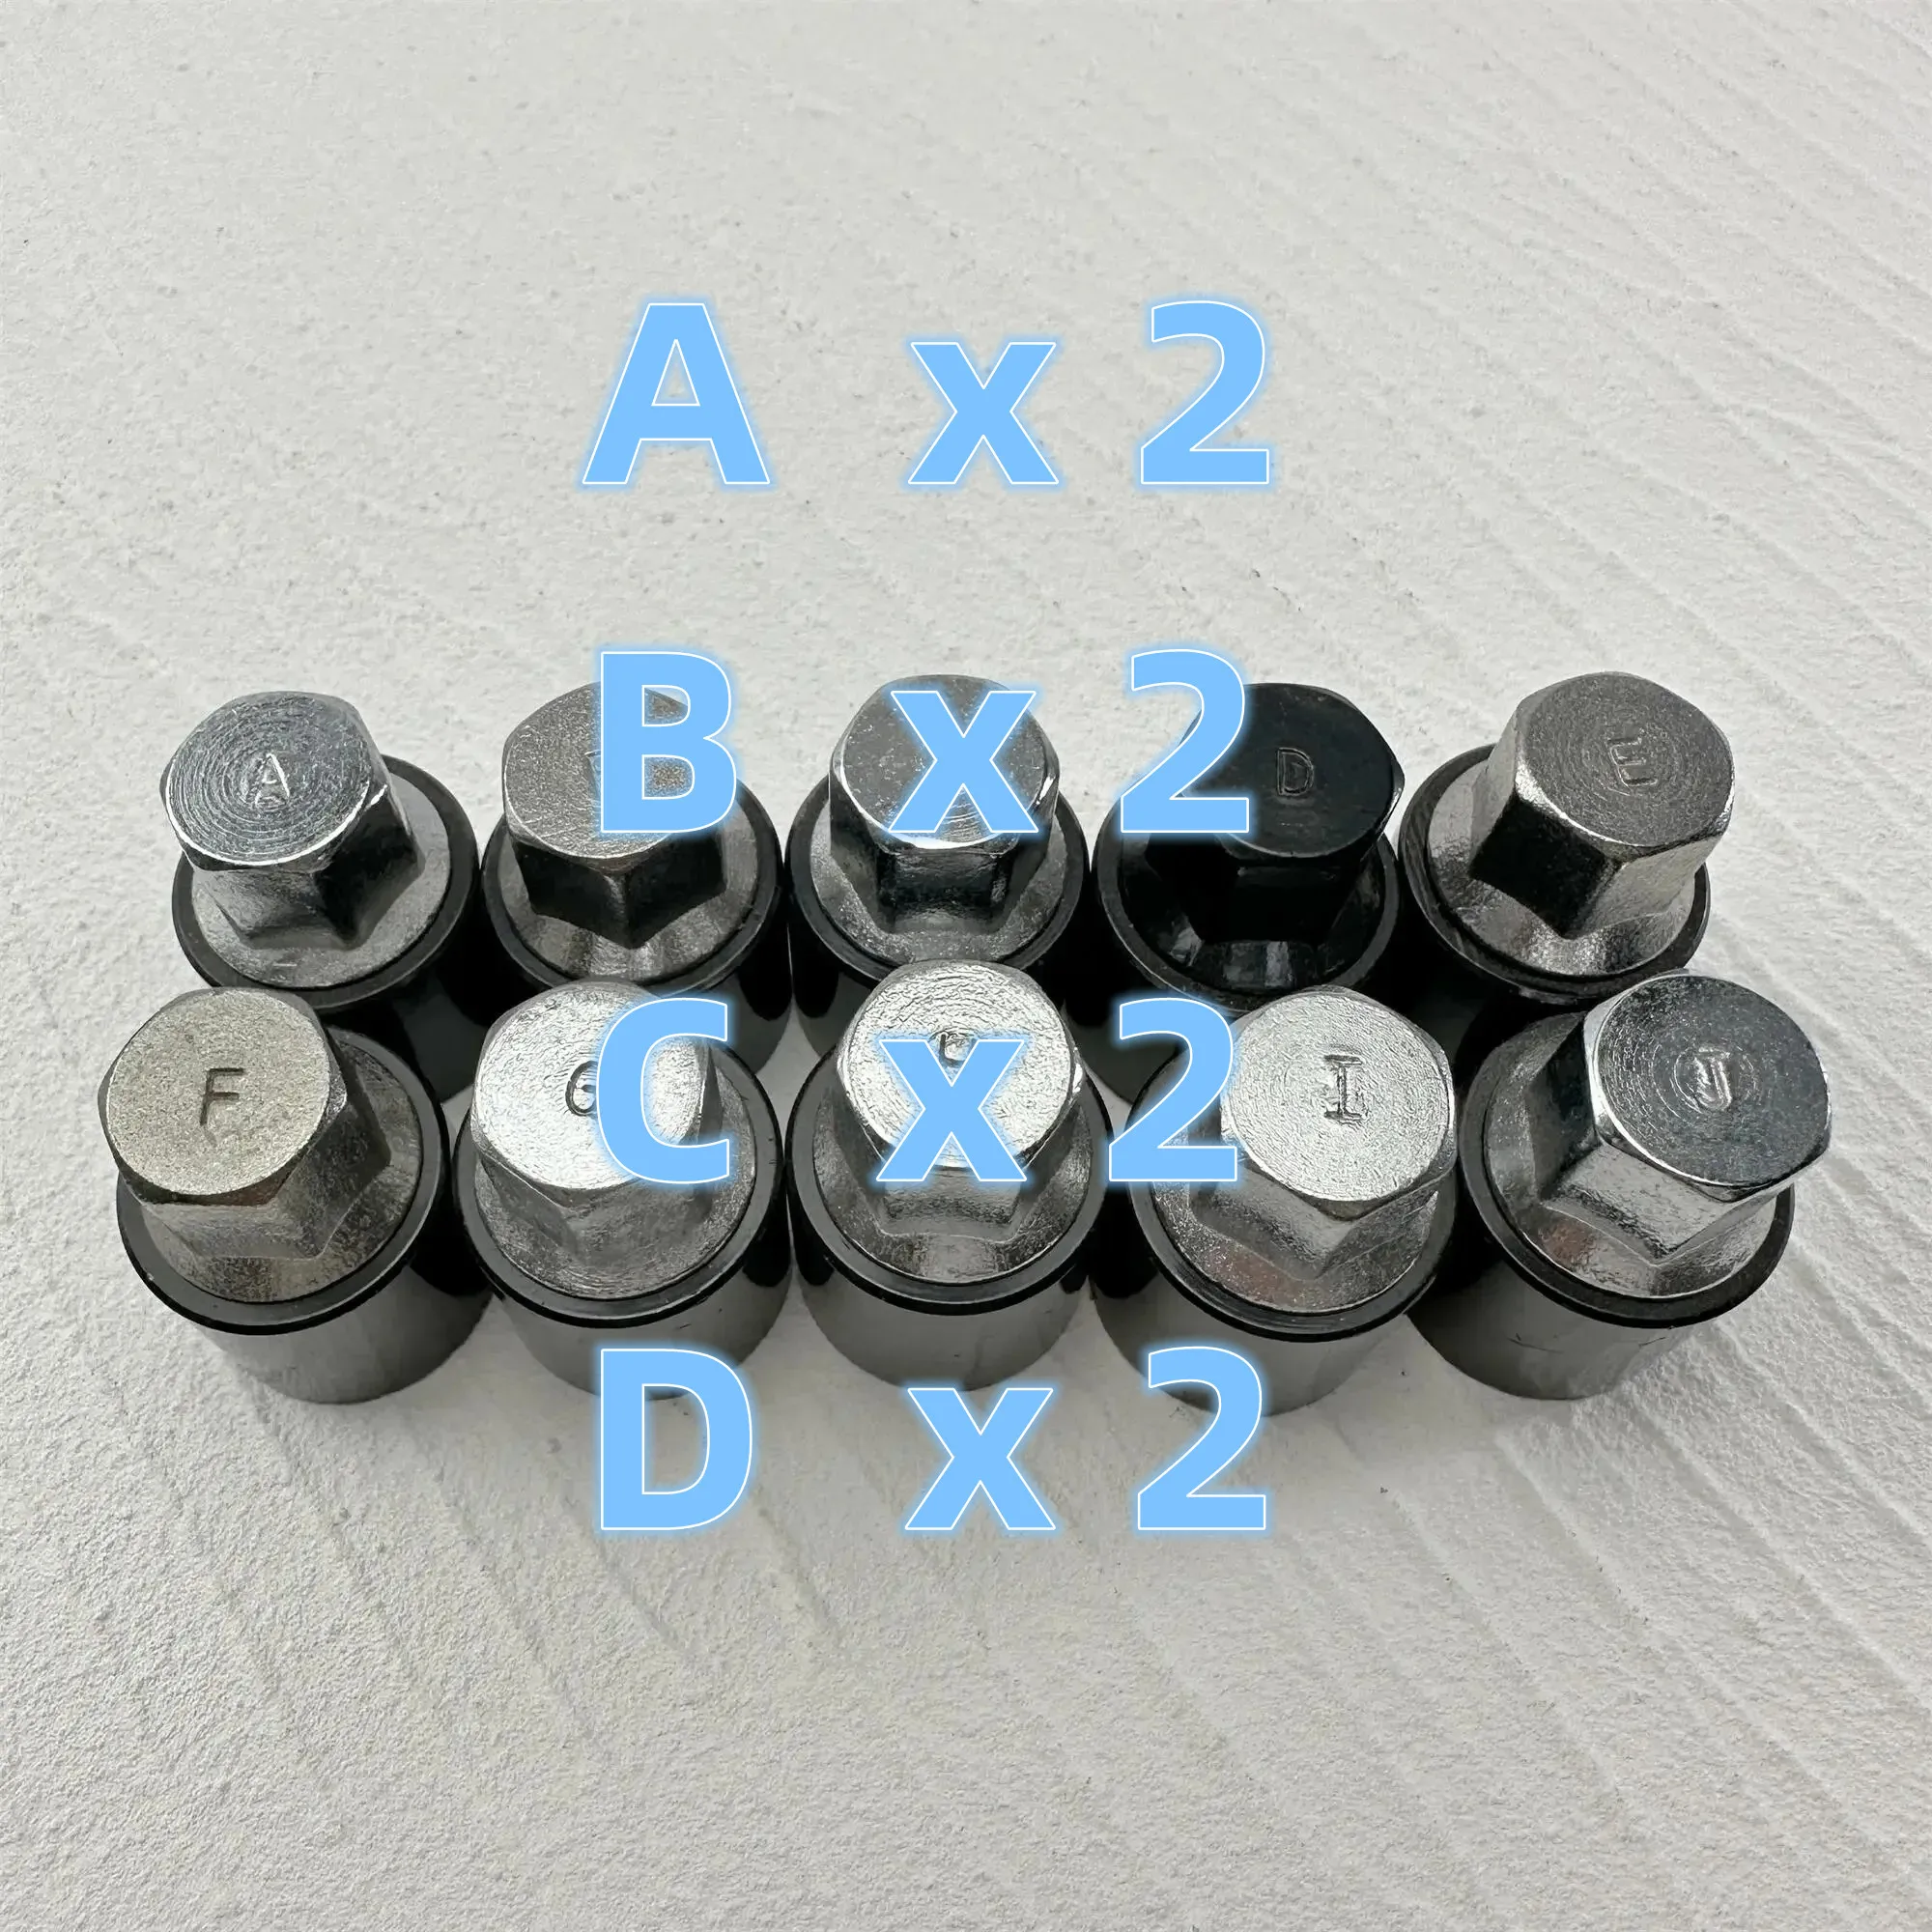 juego-de-tornillos-antirrobo-abcd-x-2-bolt-boss-herramienta-de-extraccion-de-tornillos-antirrobo-de-rueda-llave-para-toyota-kurozek-senna-tanto-prado-type